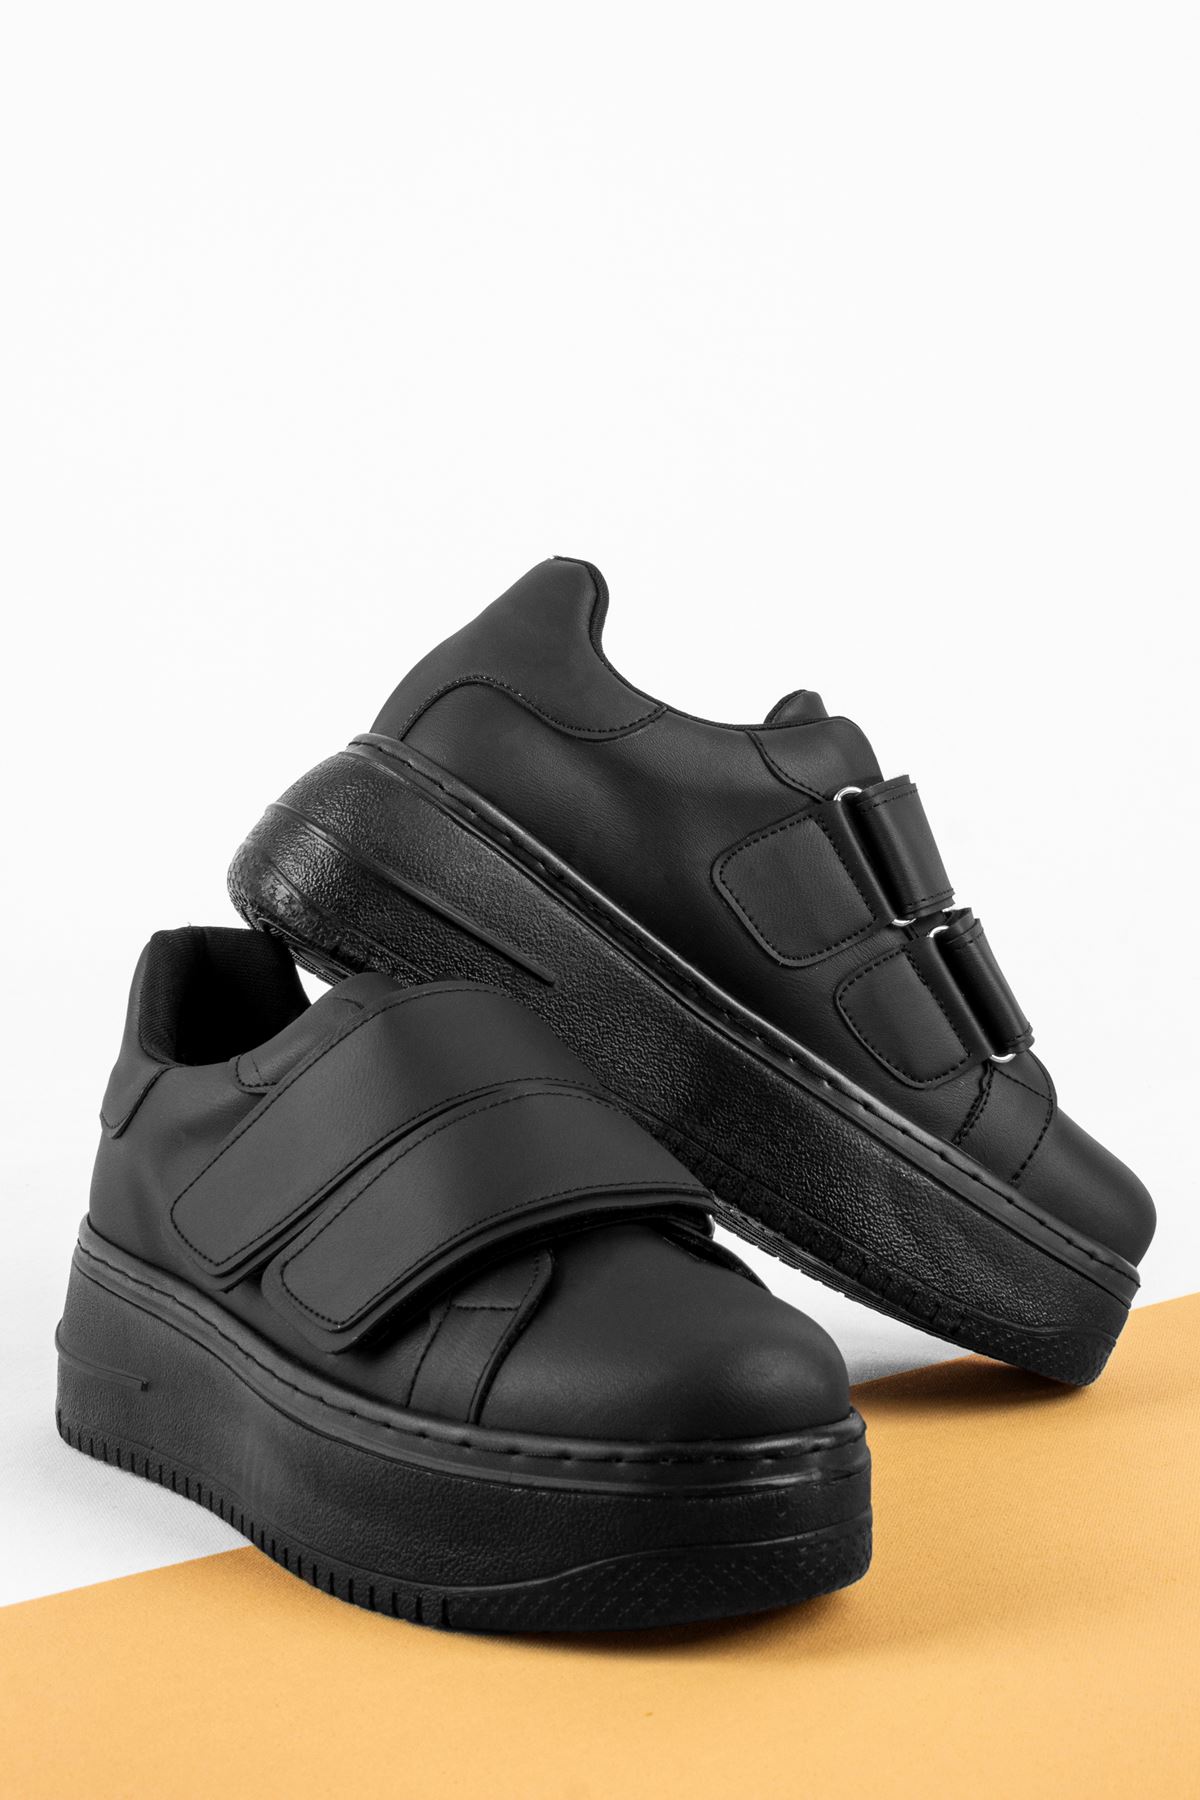 Alvin Kadın Spor Ayakkabı 2 Bantlı-siyah